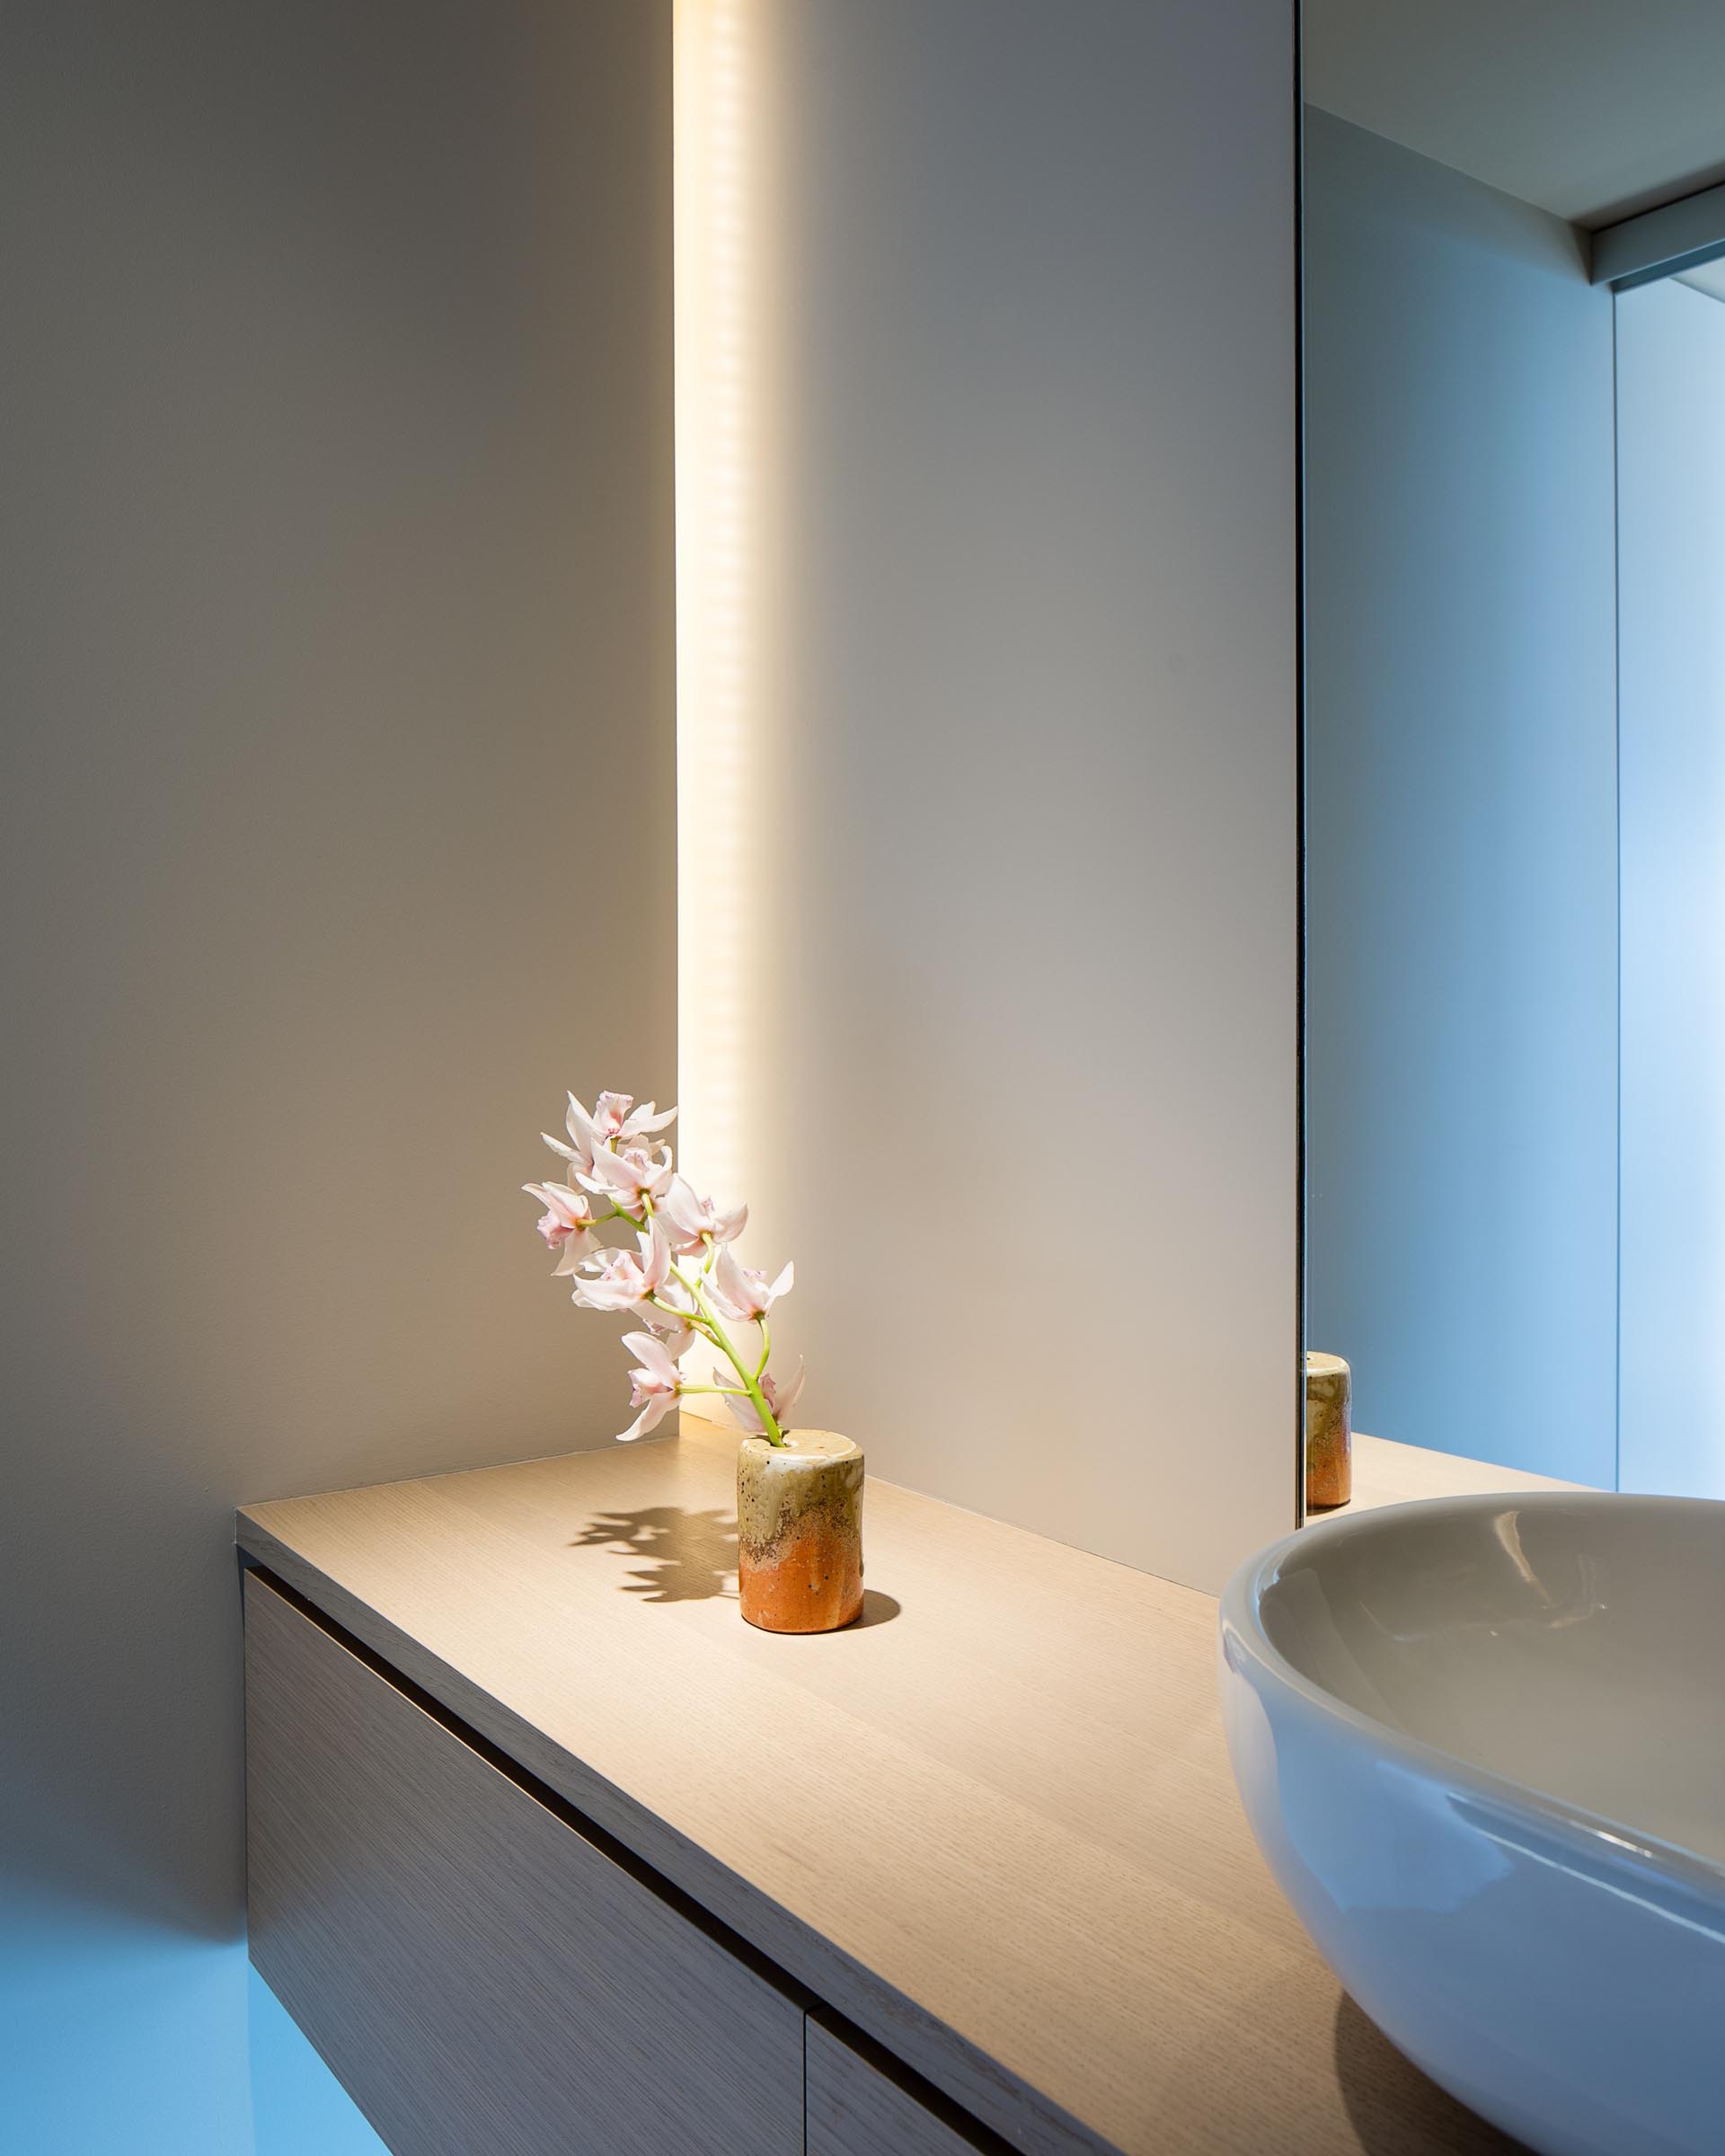 В этой современной ванной комнате есть парящий деревянный туалетный столик со скрытым освещением, спрятанным в углу.